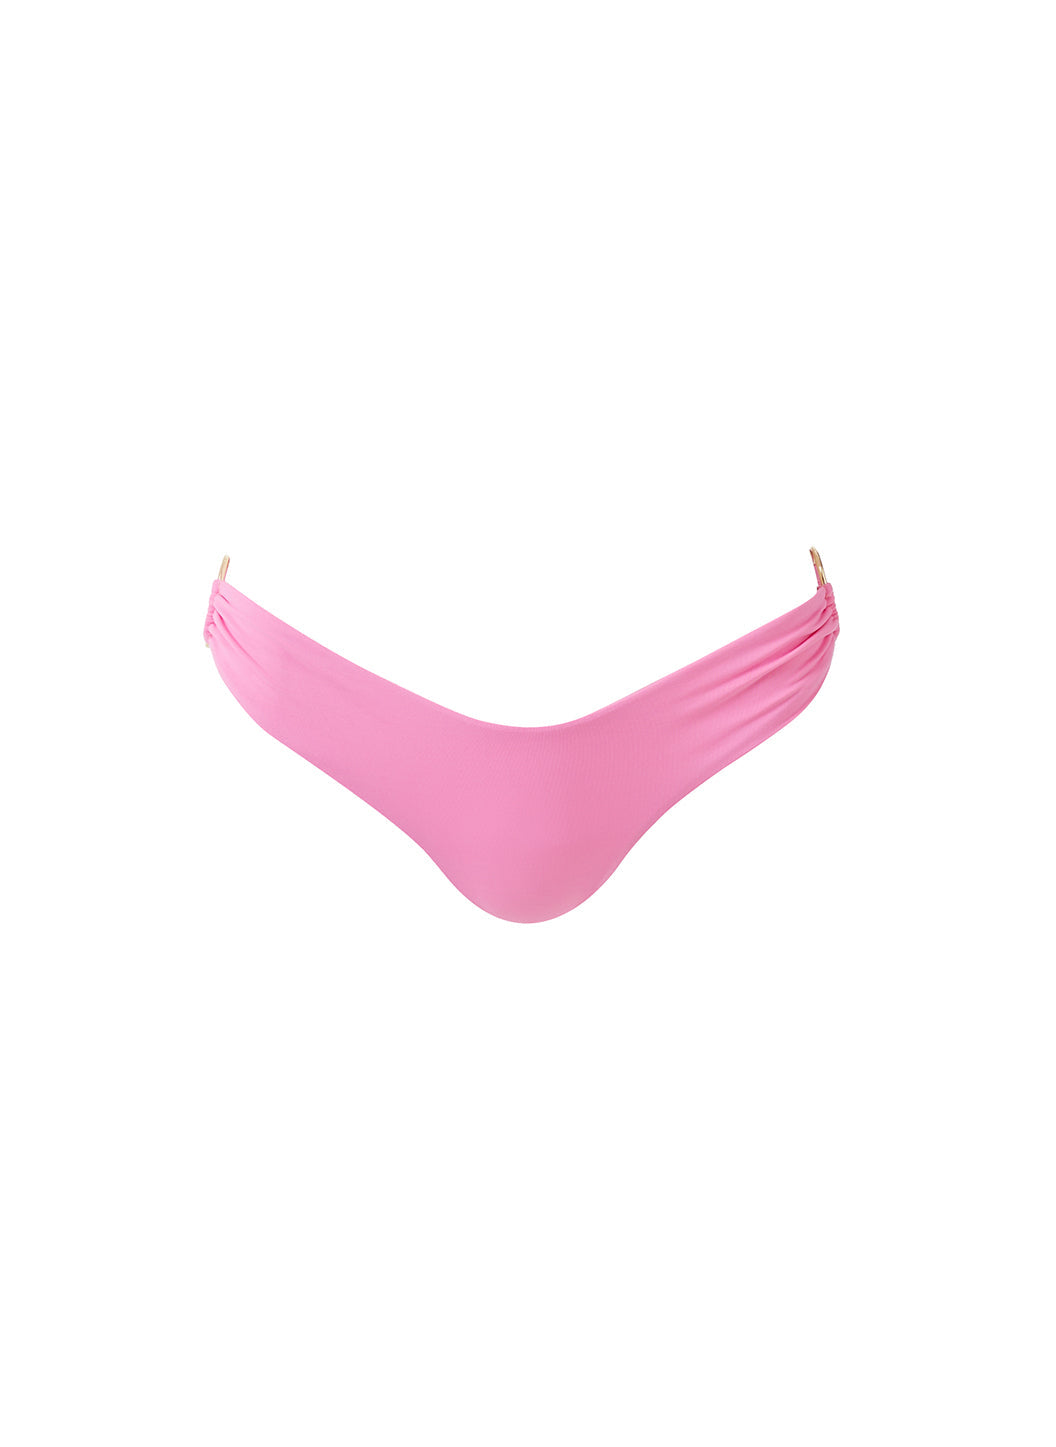 hamburg pink bikini bottom cutouts 2024